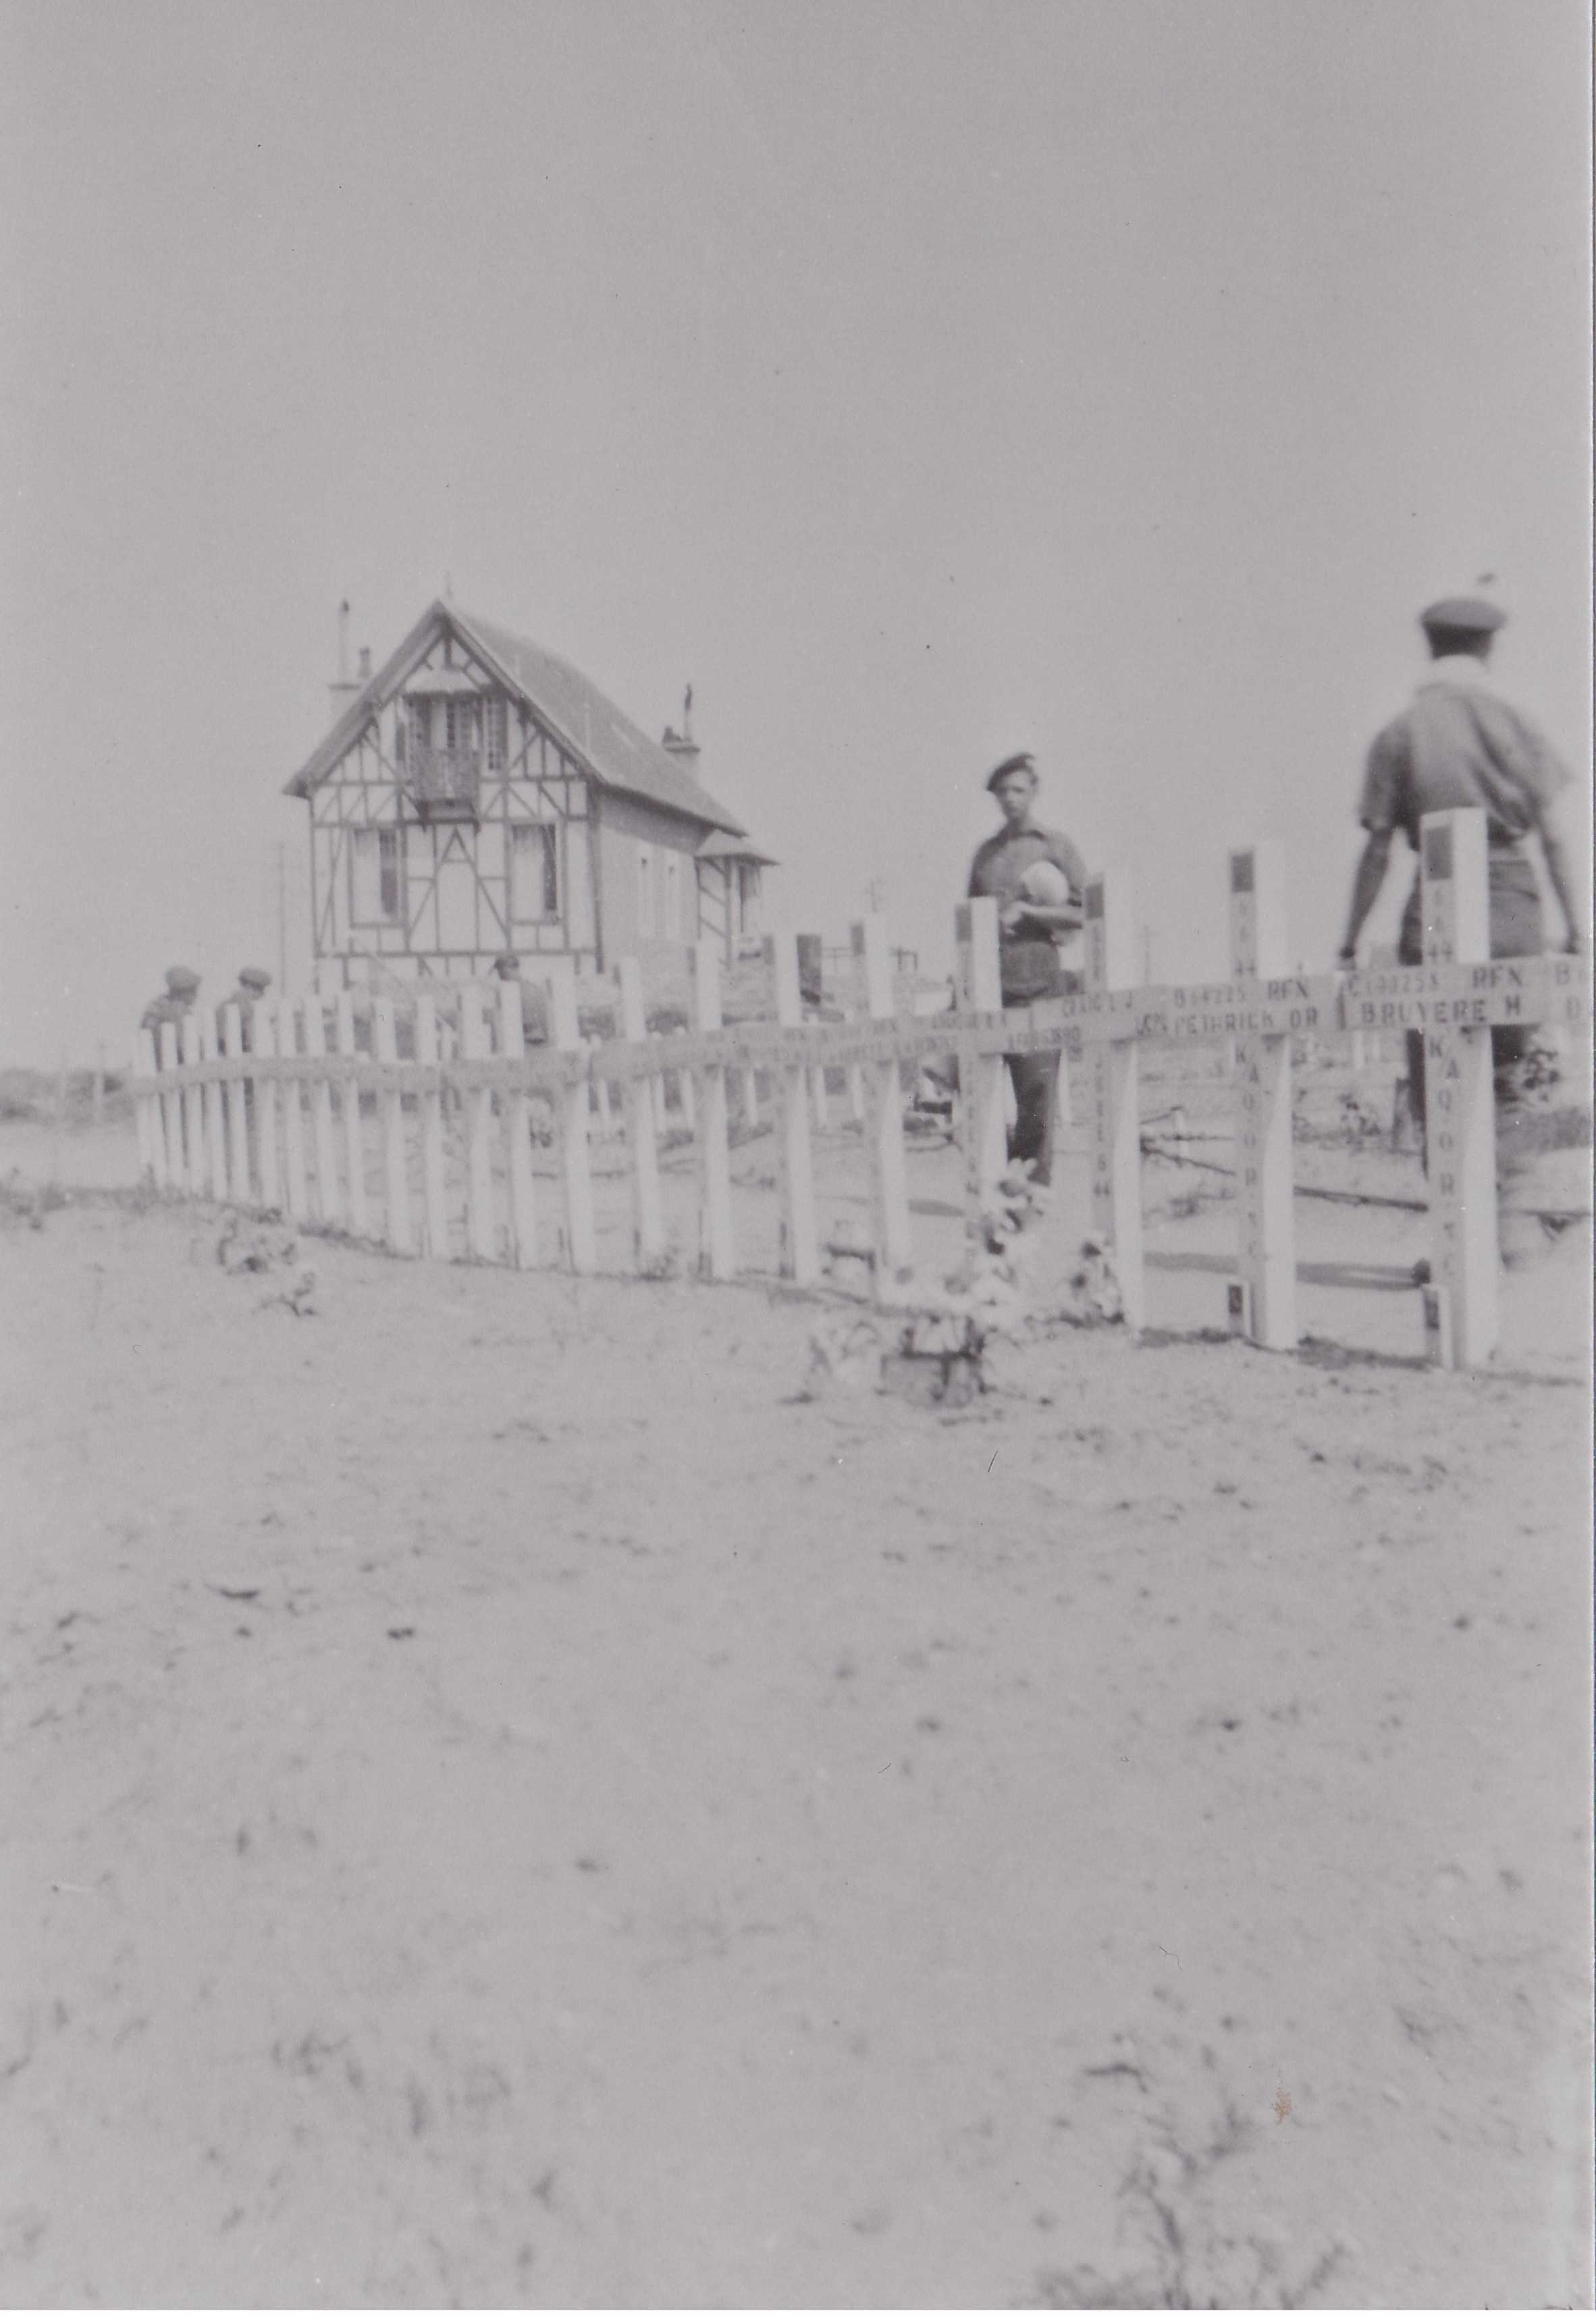 Photographie en noir et blanc – Une maison typiquement française est visible à l’arrière-plan. Deux hommes marchent derrière une série de croix blanches érigées sur le sol. La photo est délavée, mais on voit que des noms sont inscrits sur chaque croix.